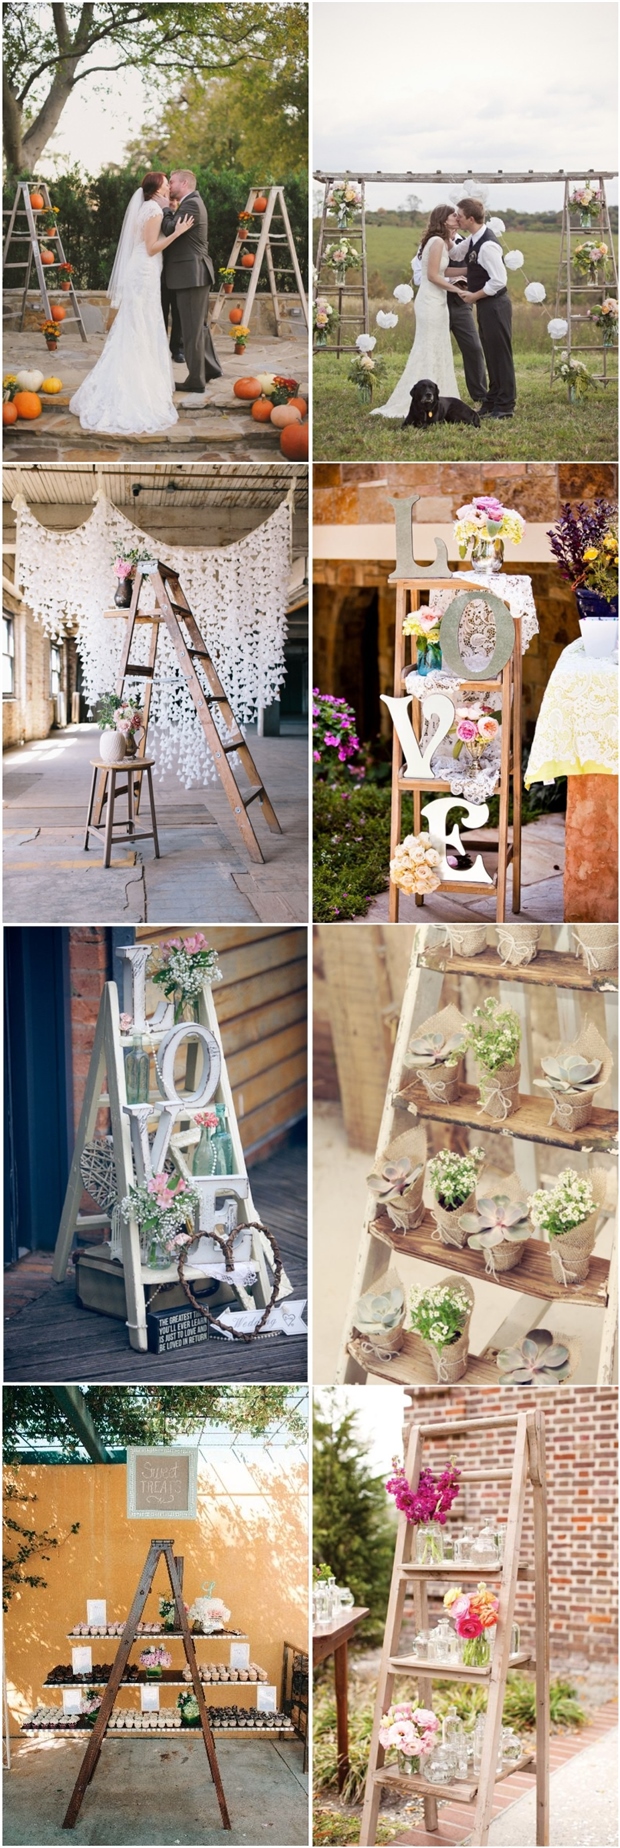 vintage rustic country wedding decor ideas- ladder wedding ideas